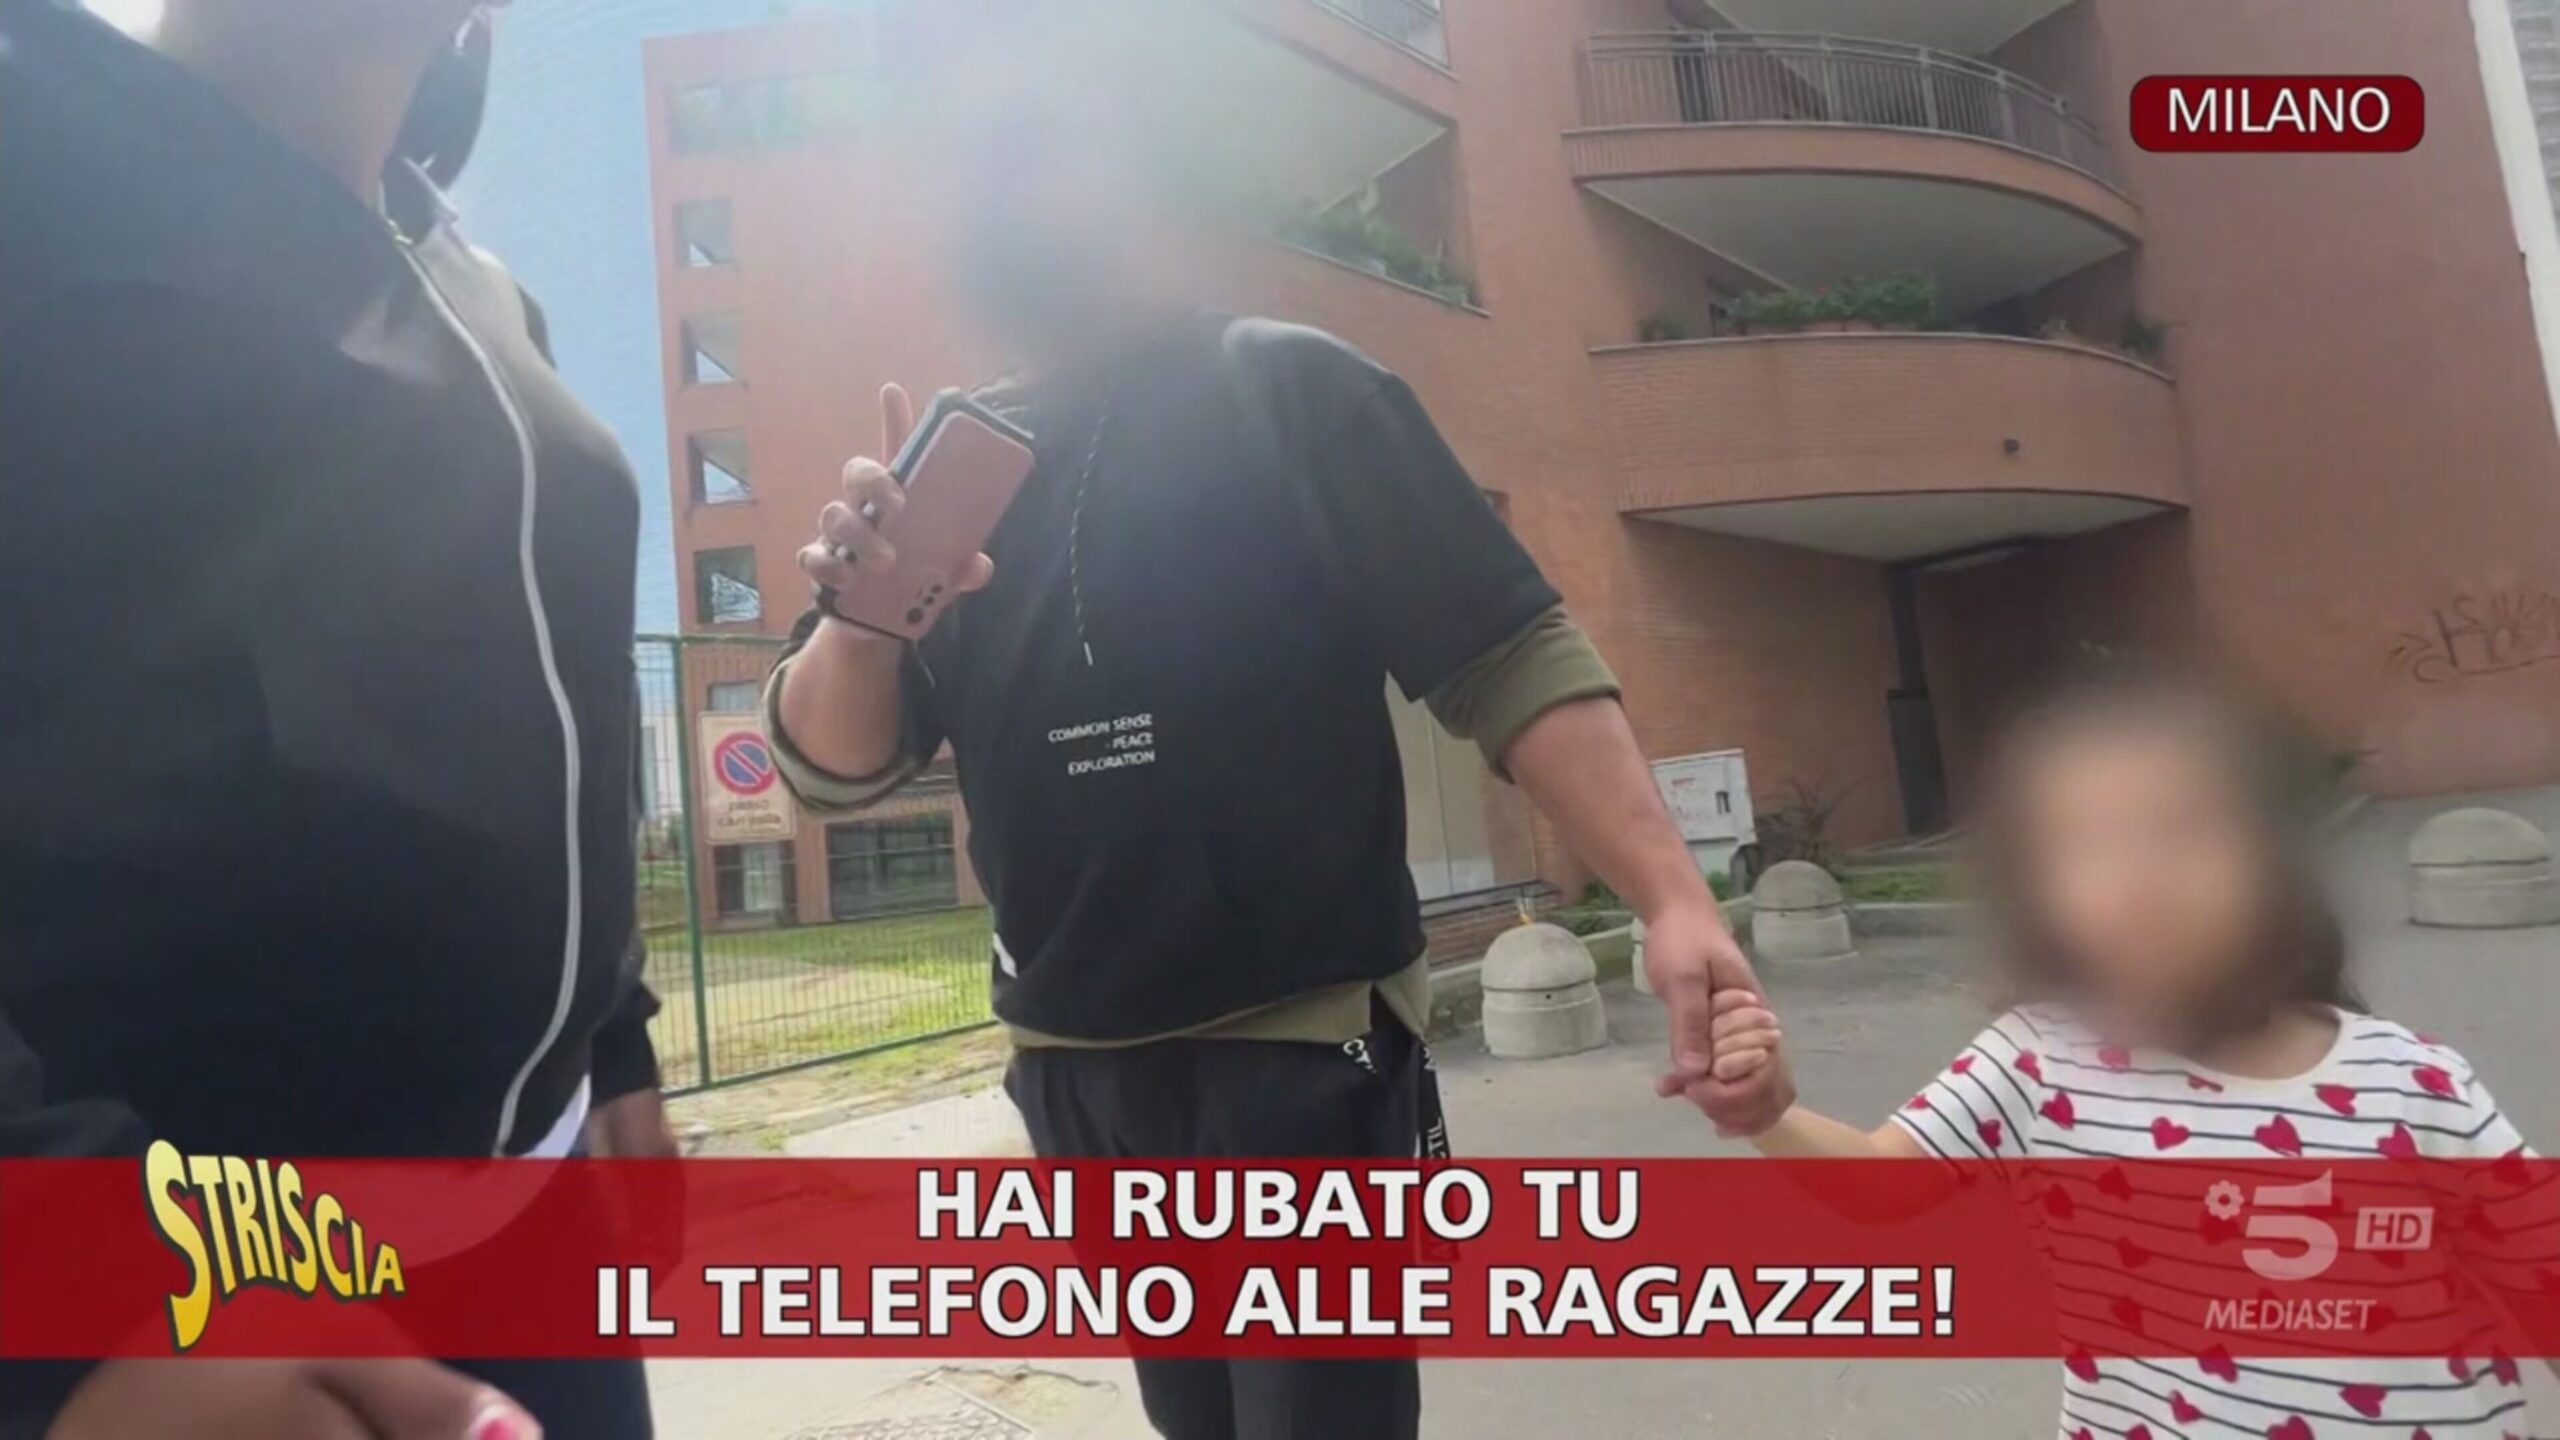 Borseggi a Milano, le immagini esclusive dell’arresto in diretta